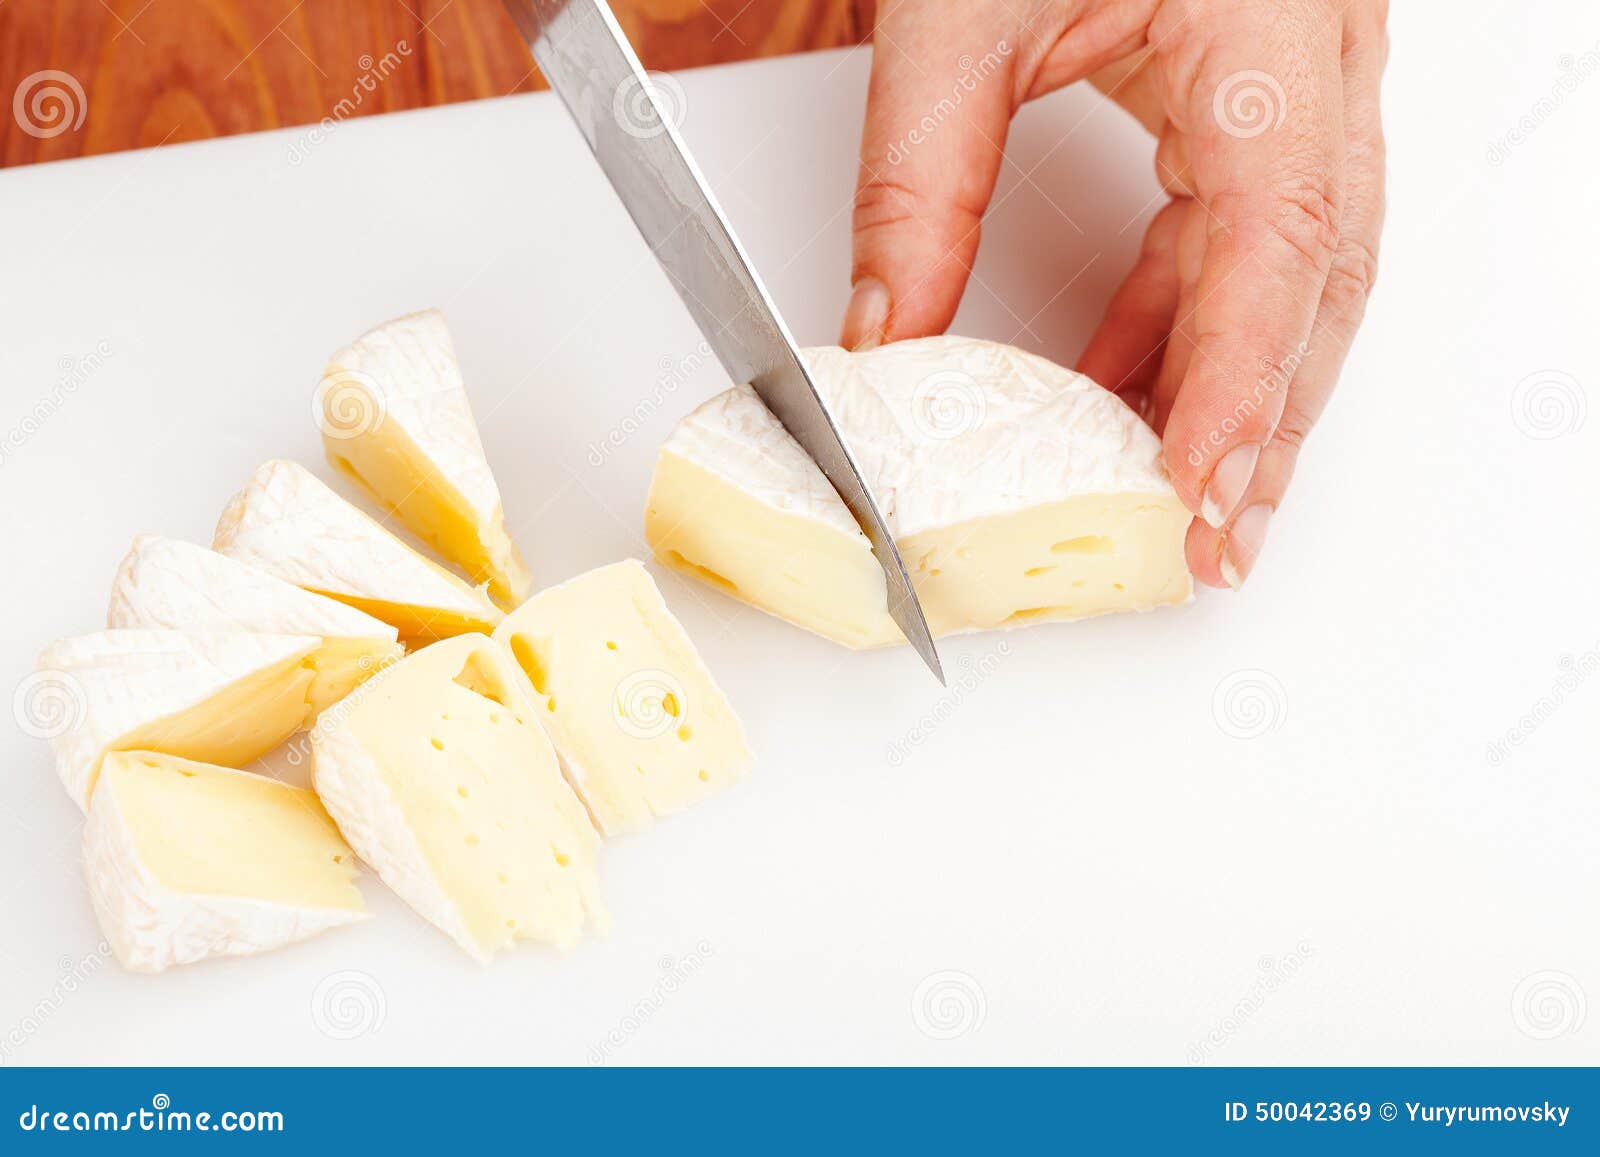 Сонник есть сыр. Сыр нарезанный. Красиво нарезать сыр слайсами. Сыр разрезанный. Нарезка круглого сыра.